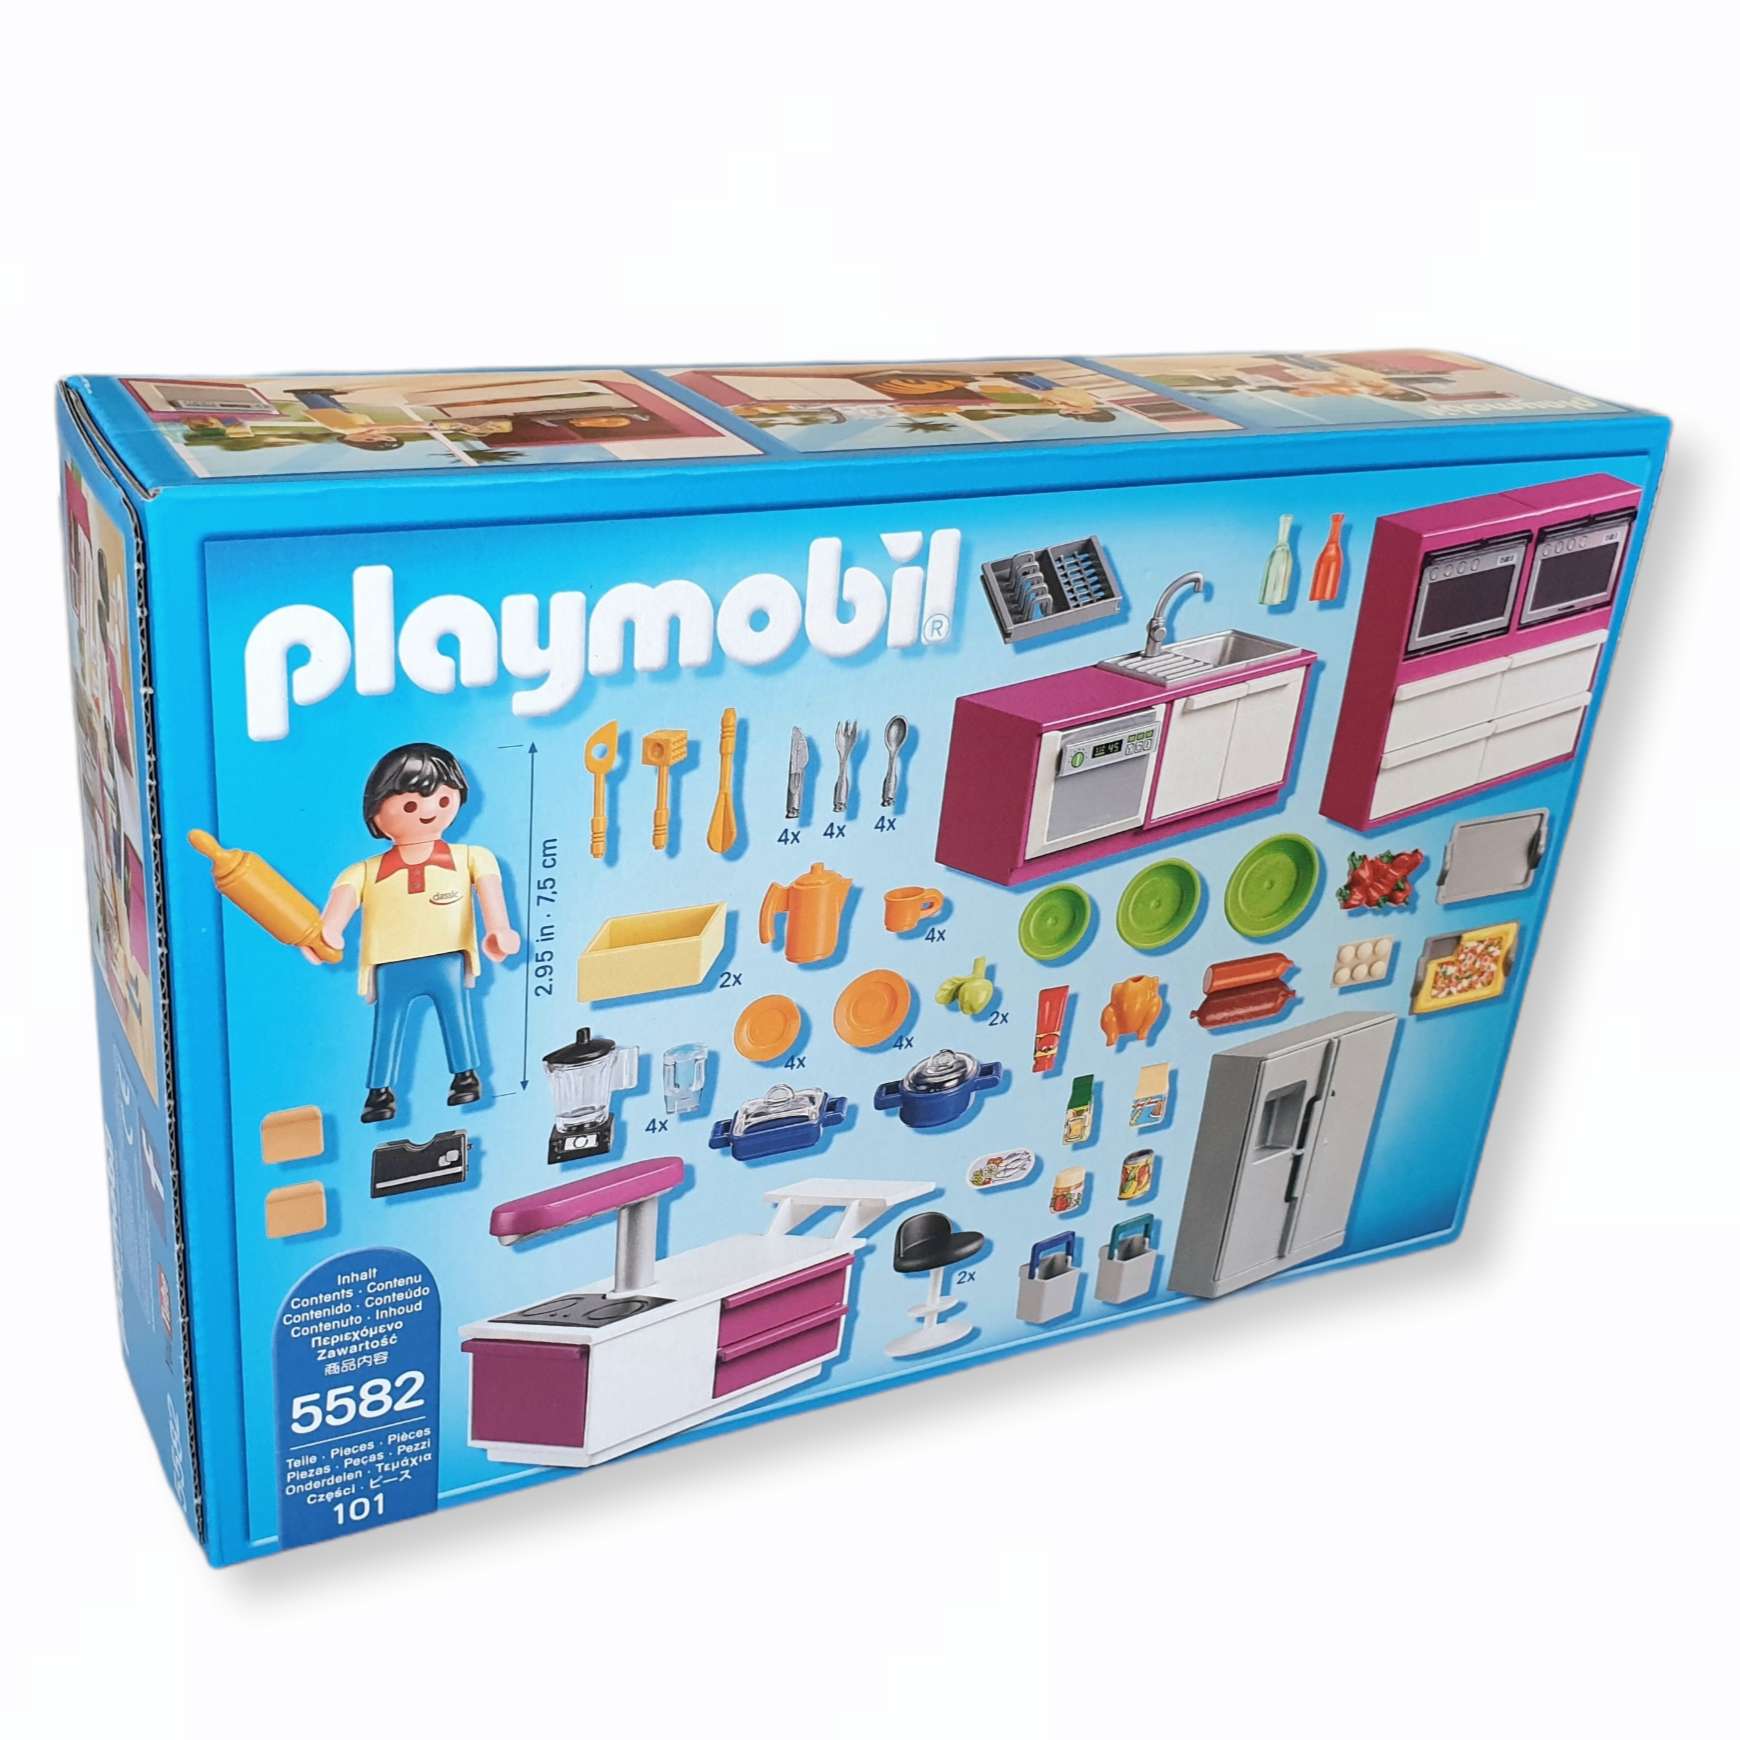 NEU Playmobil 5582 Designerküche mit viel Zubehör passend zur Luxusvilla 